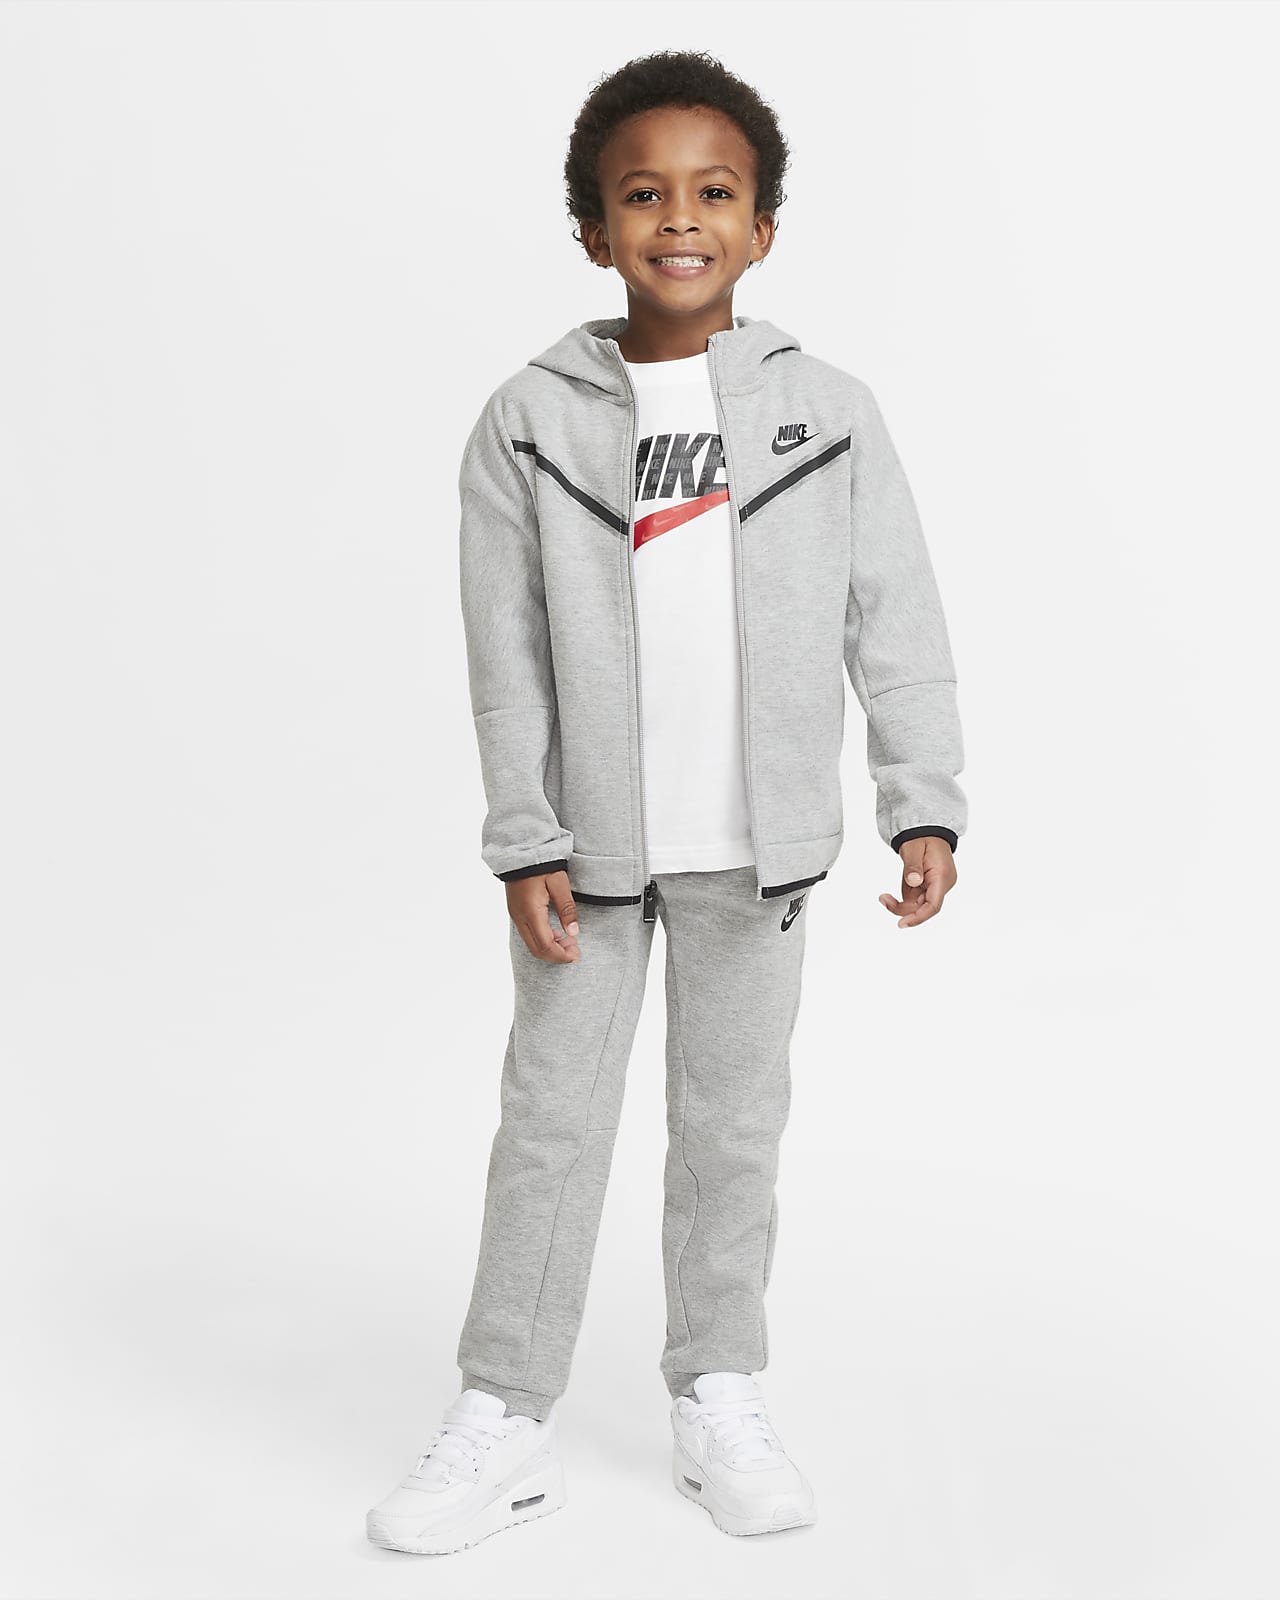 Nike Sportswear Tech Fleece Younger Kids' Hoodie and Trousers Set